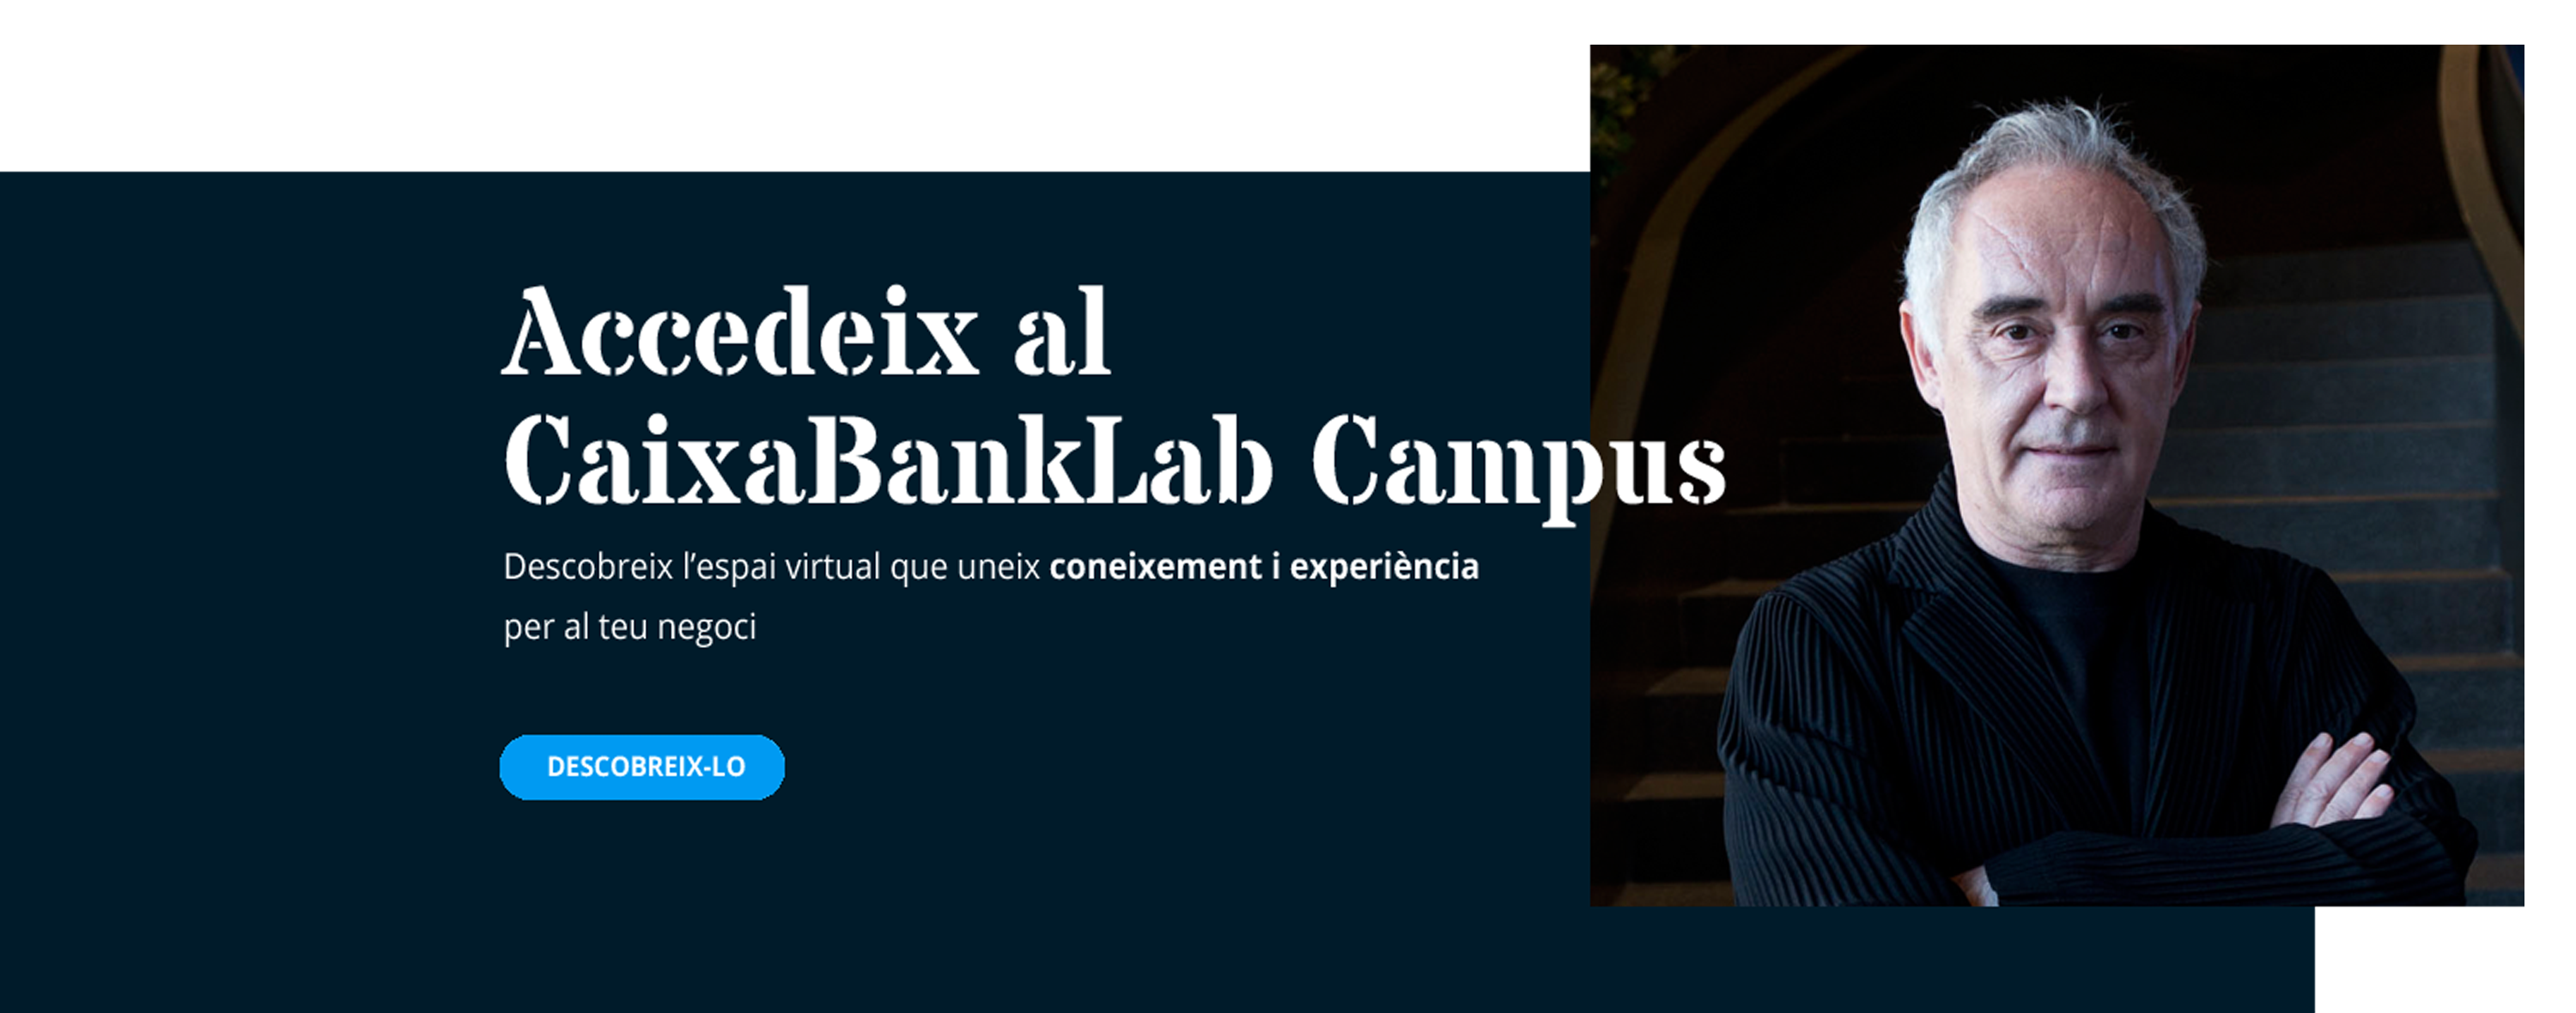 CaixaBankLab Campus